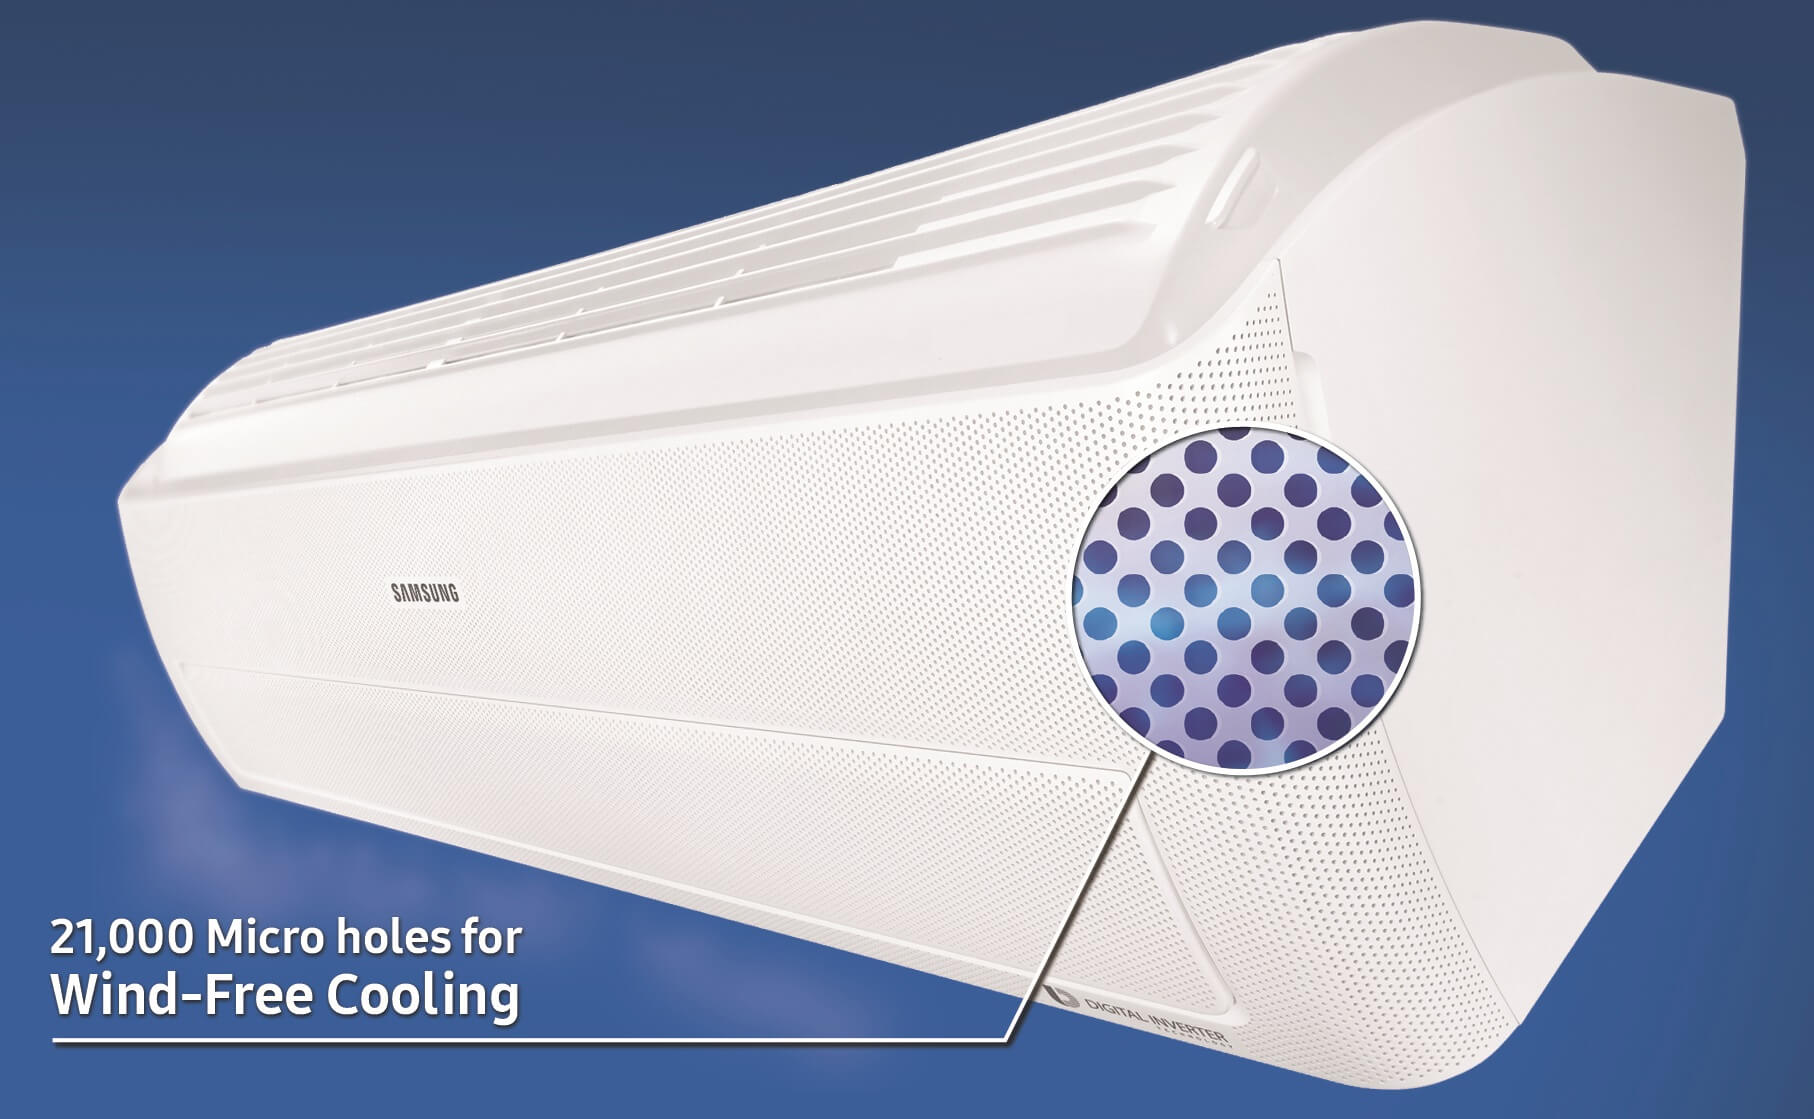 Review: ar-condicionado wind free da samsung resfria sem precisar de ventos